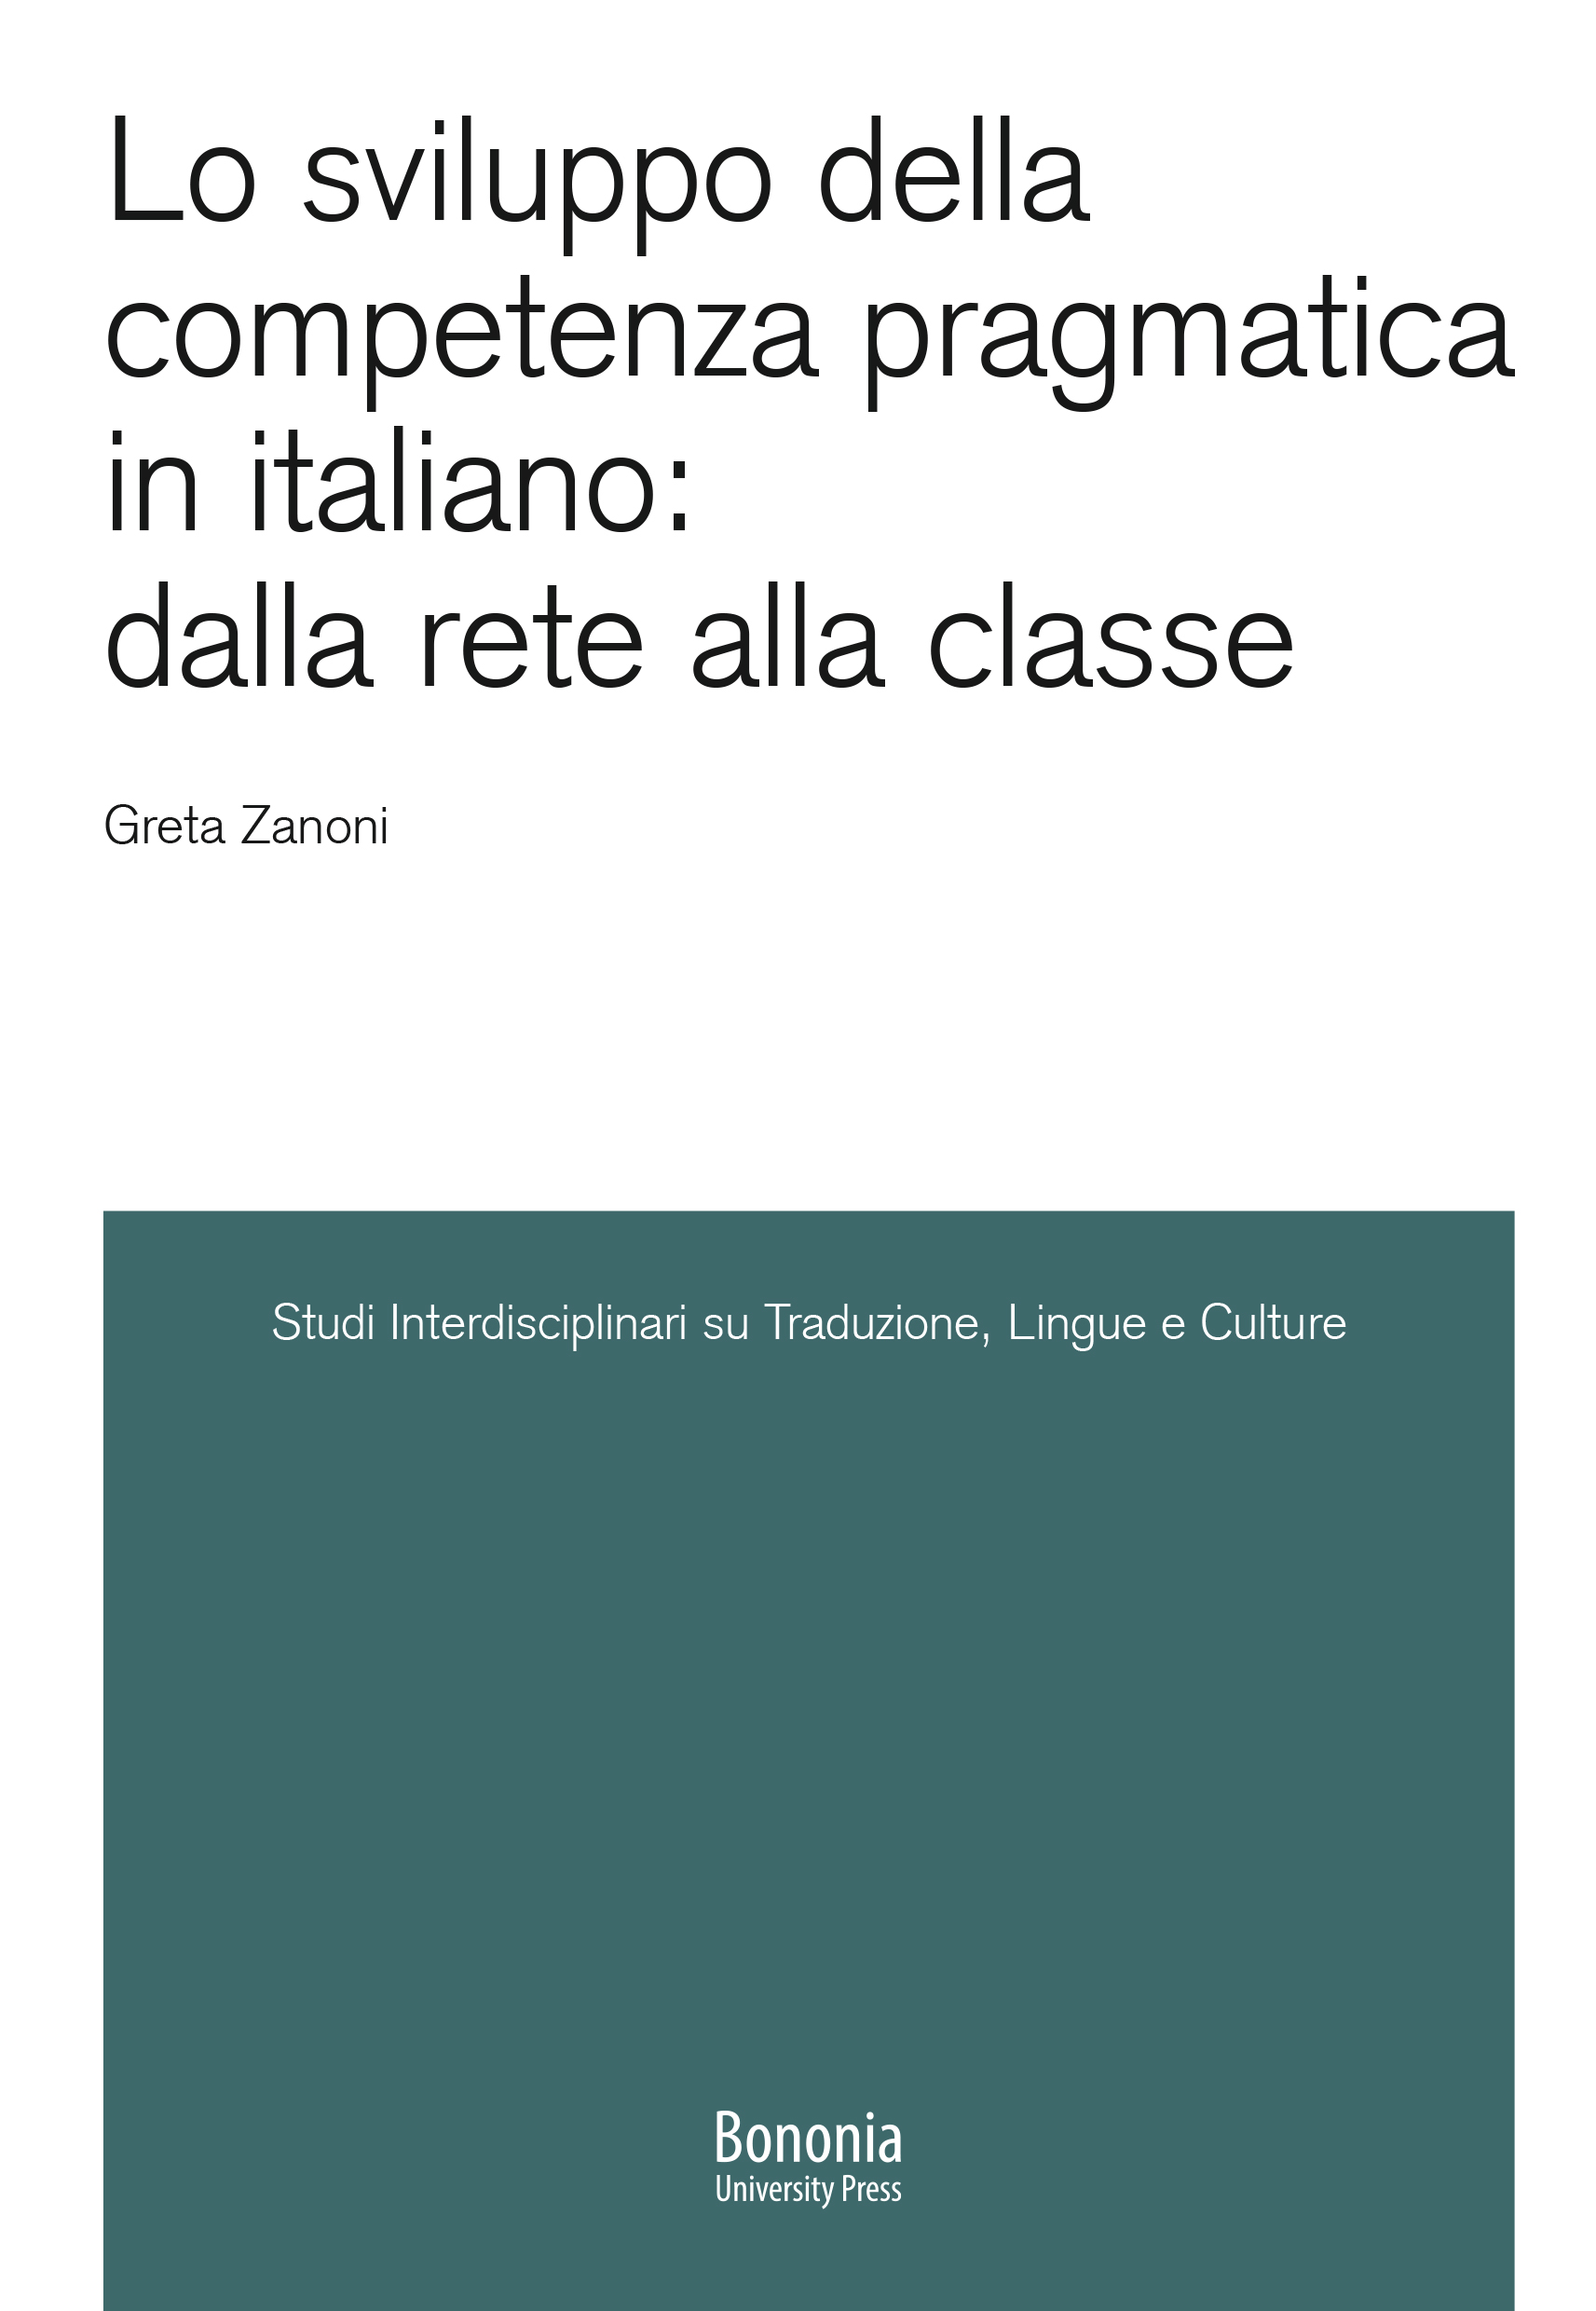 Lo sviluppo della competenza pragmatica in italiano: dalla rete alla classe - Bologna University Press